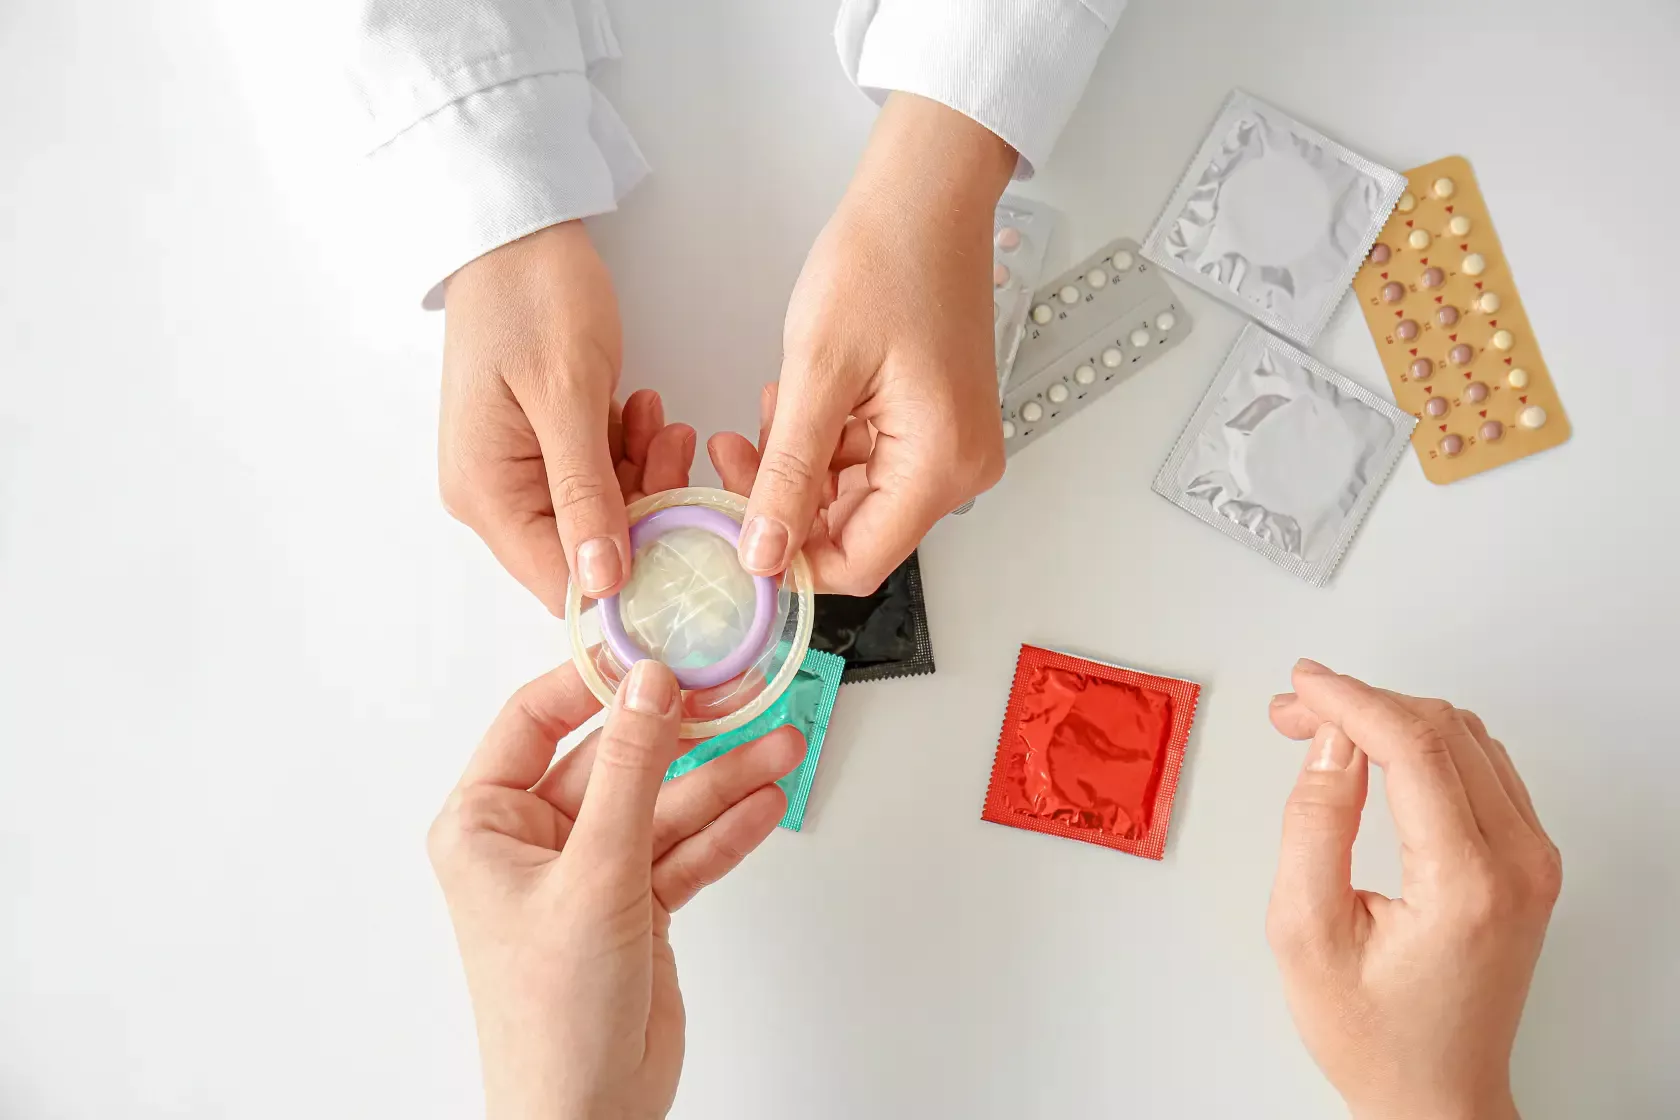 Der Gynäkologe zeigt verschiedene Verhütungsmittel wie Pille, Kondome, Diaphragma